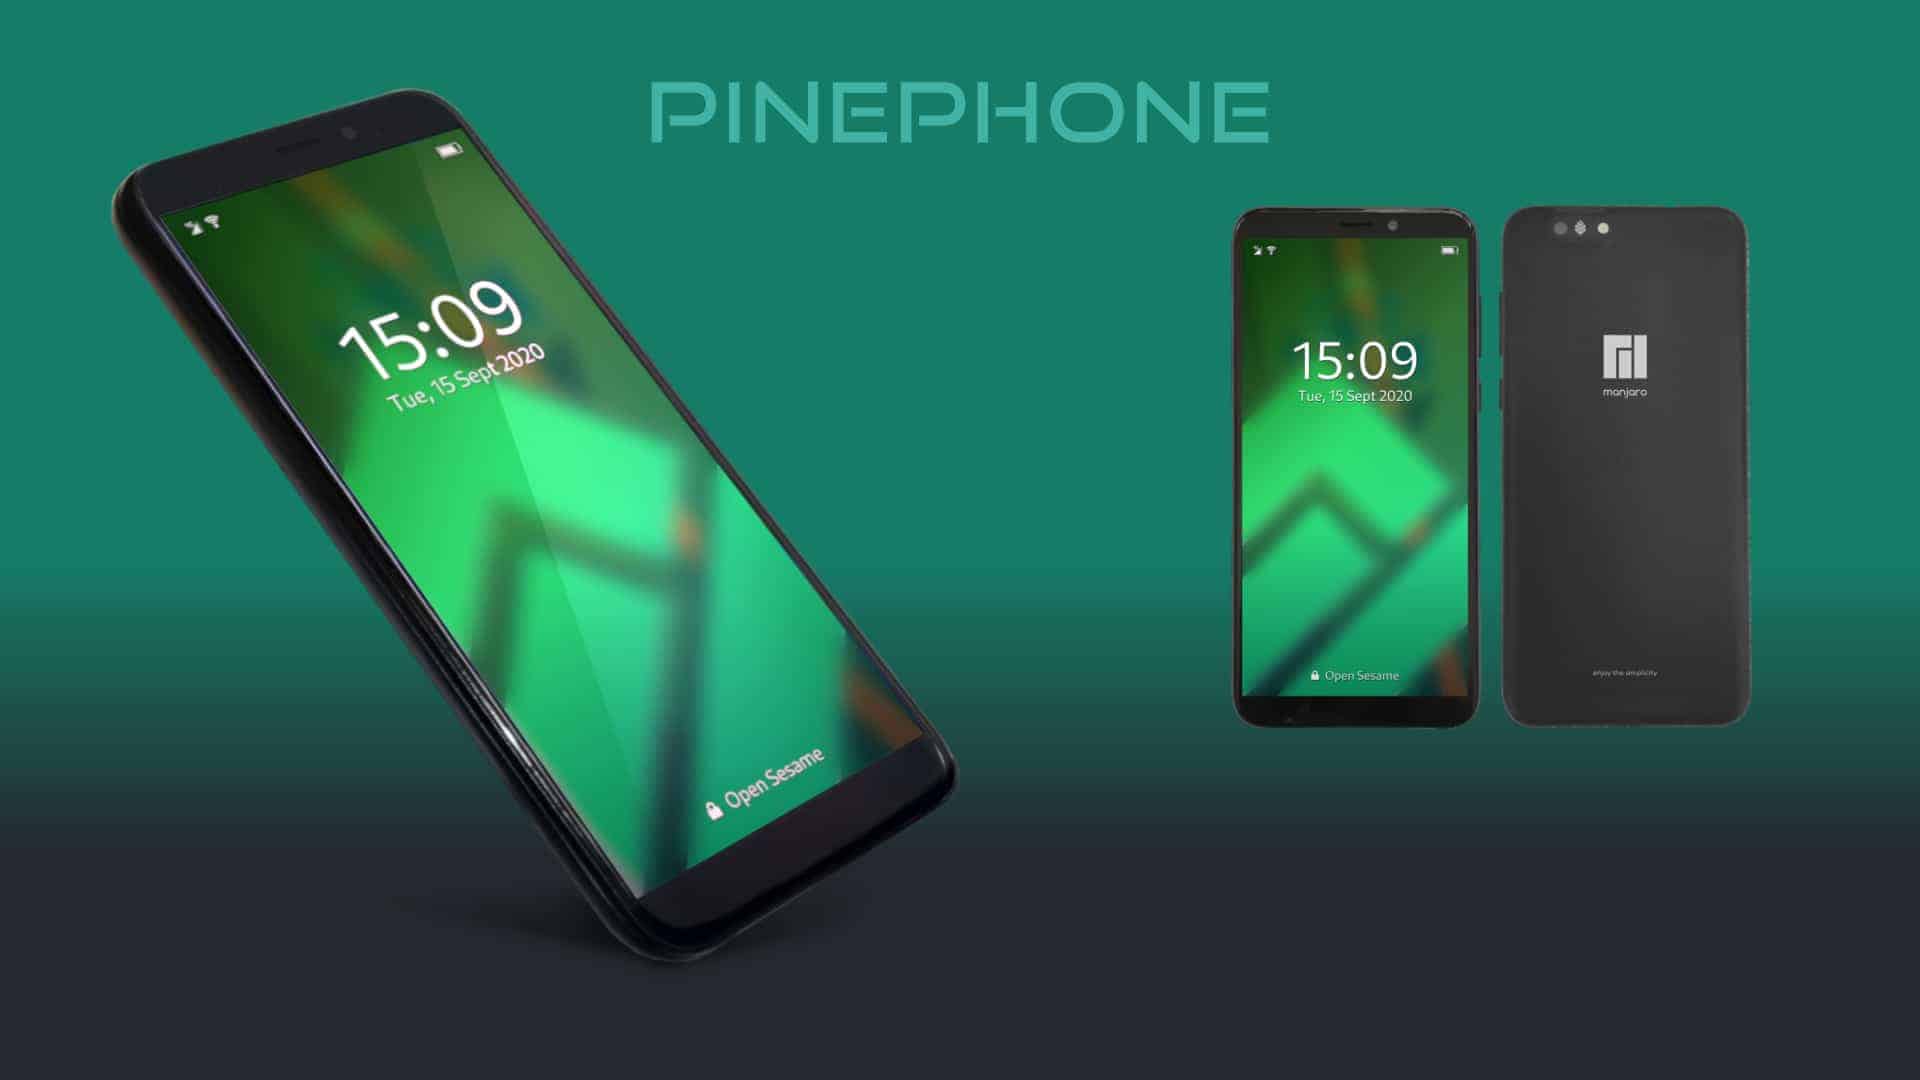 Agora você pode atualizar o PinePhone com mais RAM e armazenamento